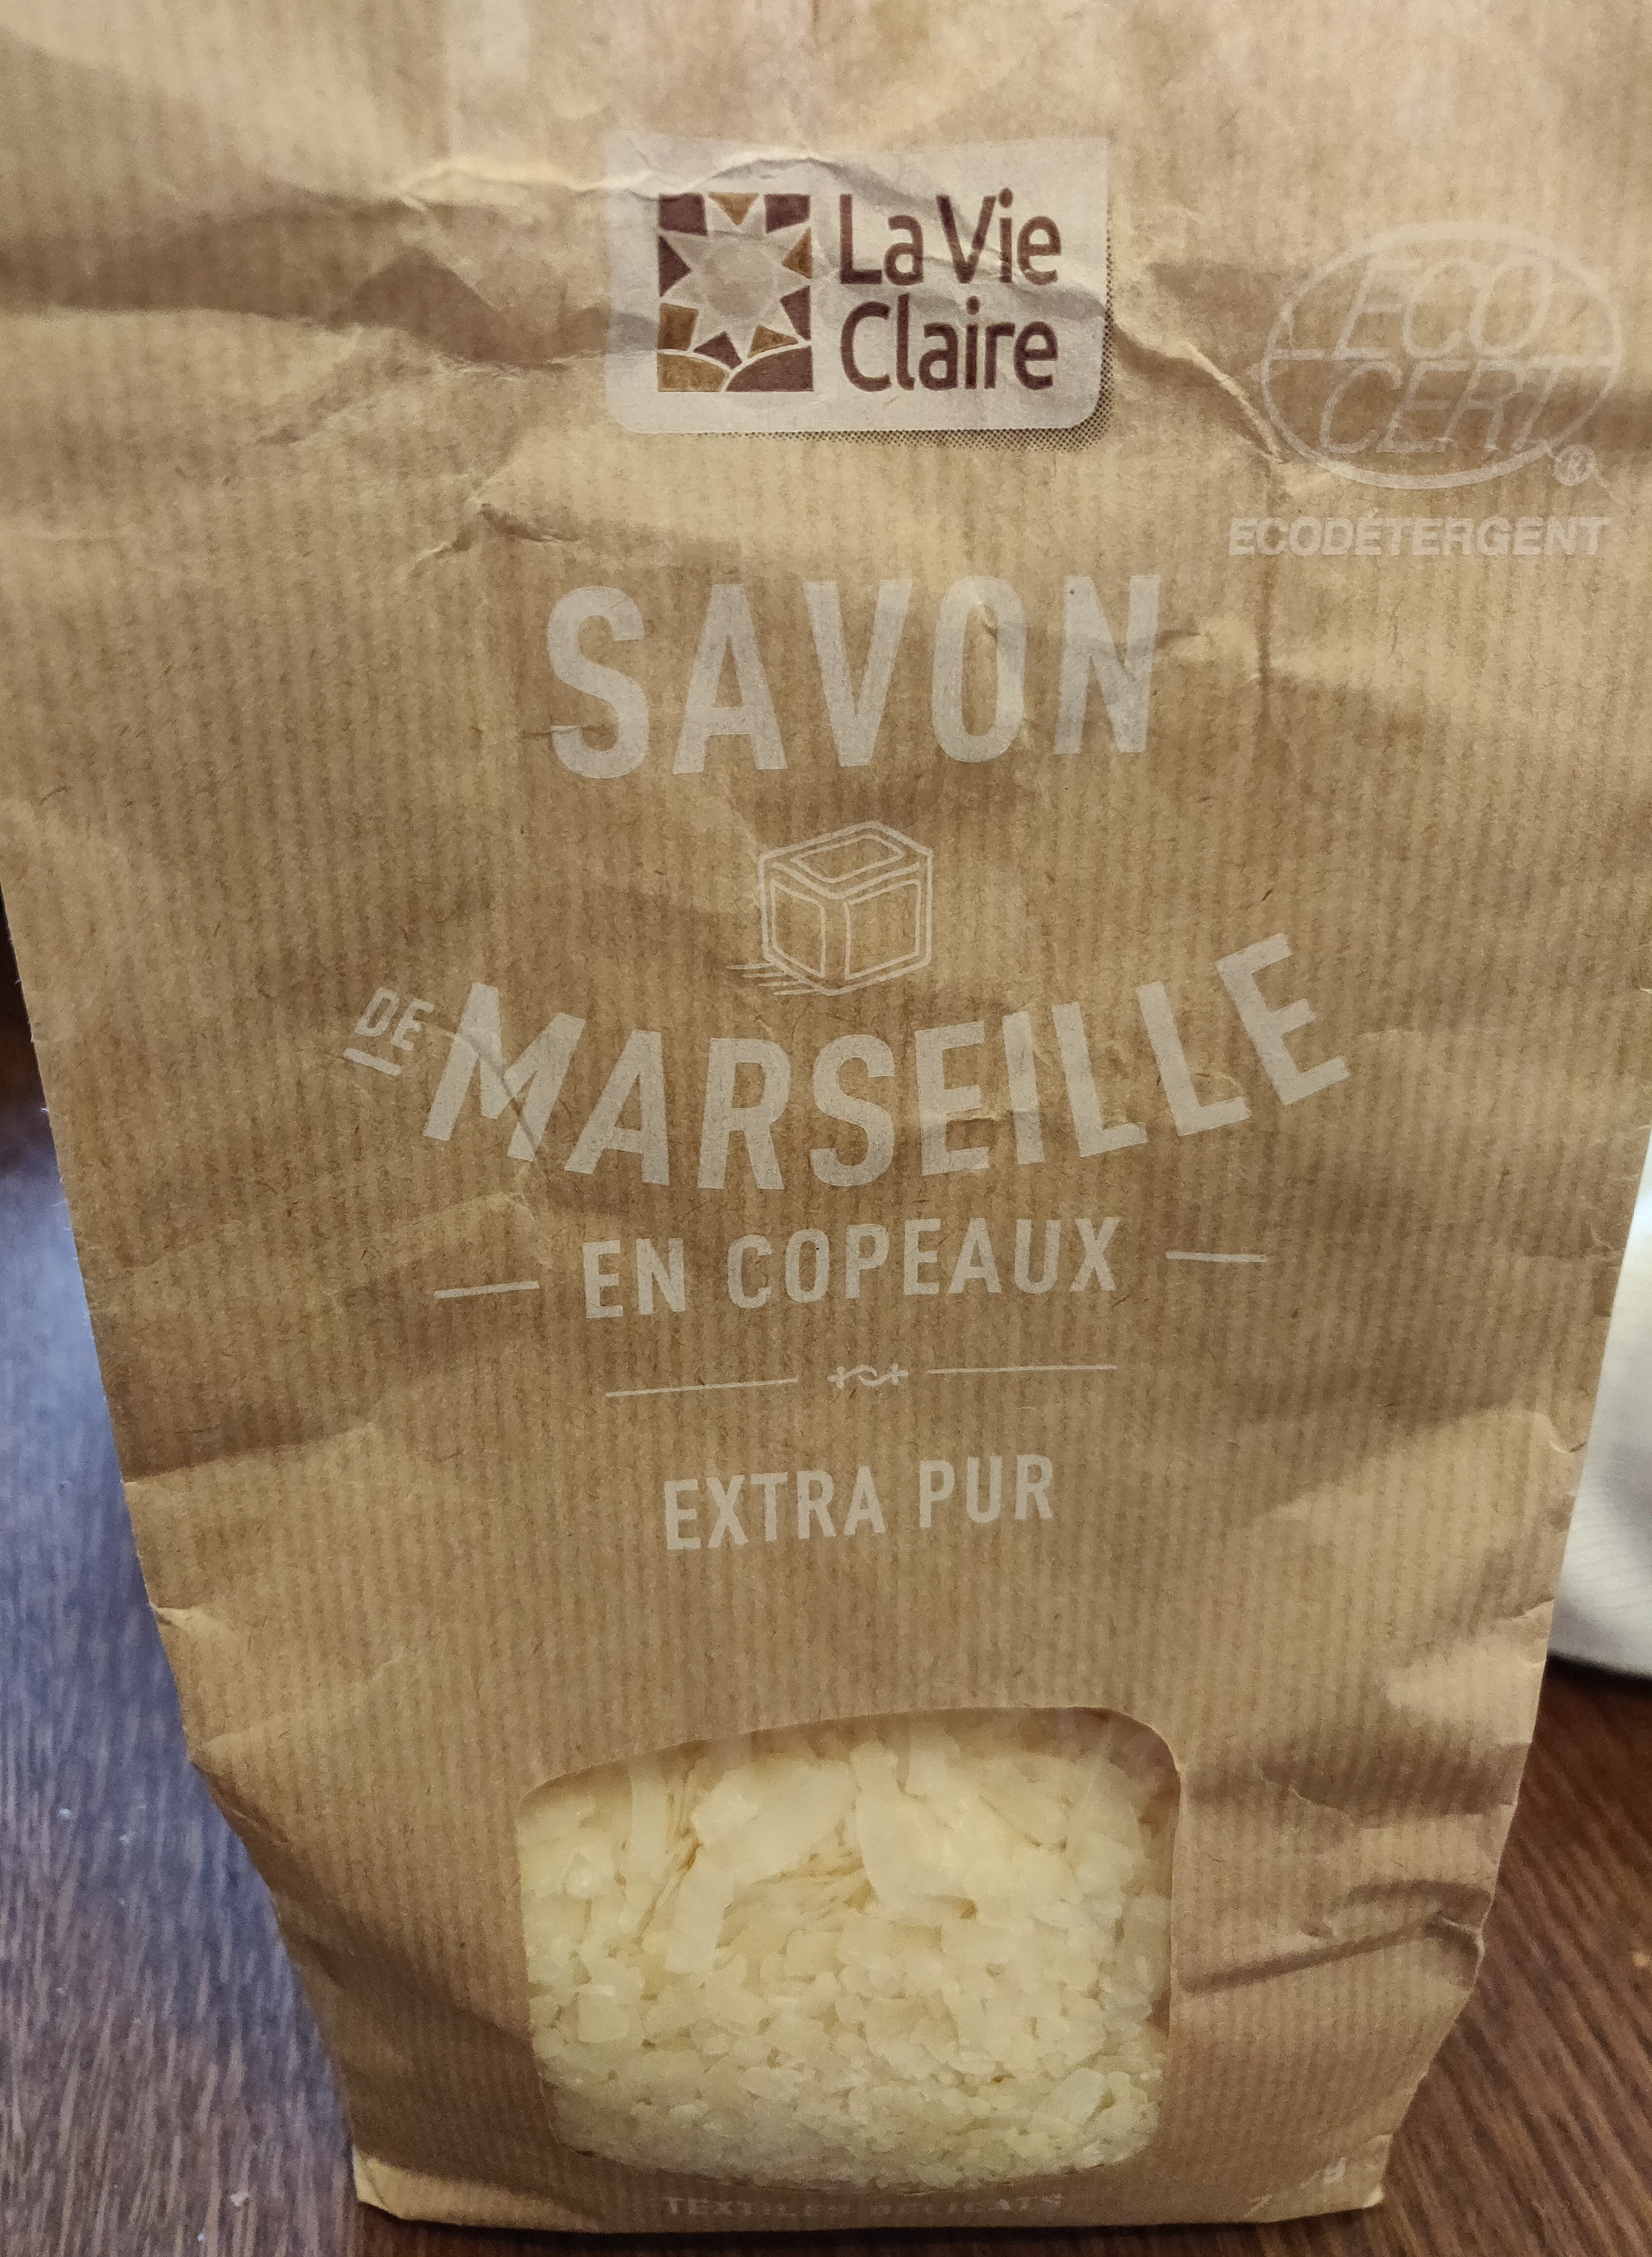 Savon de Marseille copeaux - Product - fr